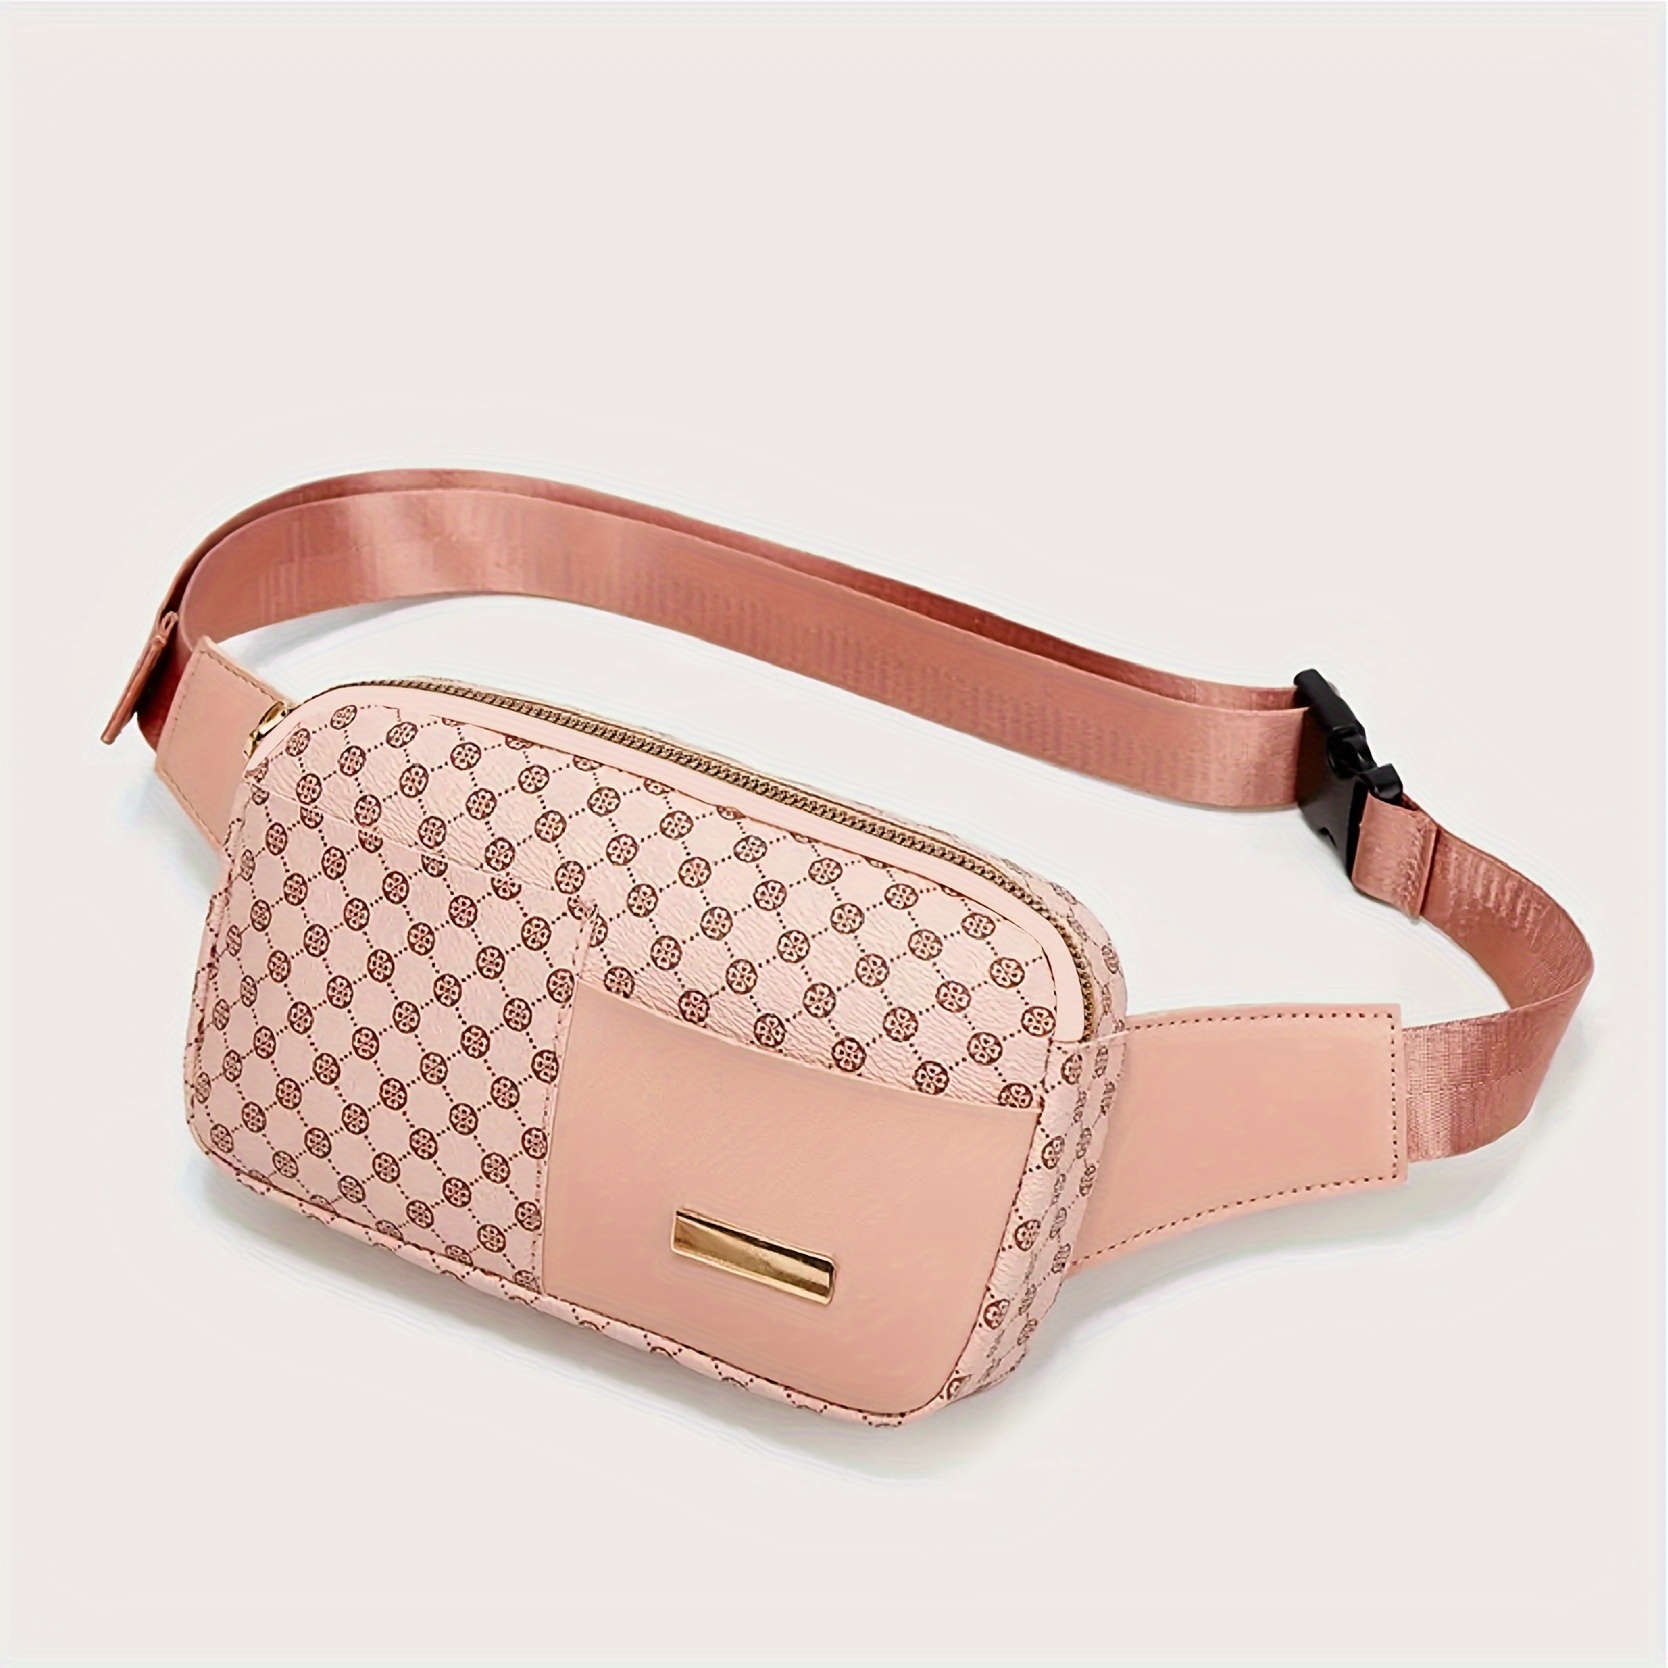 Louis Vuitton Monogram Leather Double Buckle Bum Fanny Pack Waist Belt Bag